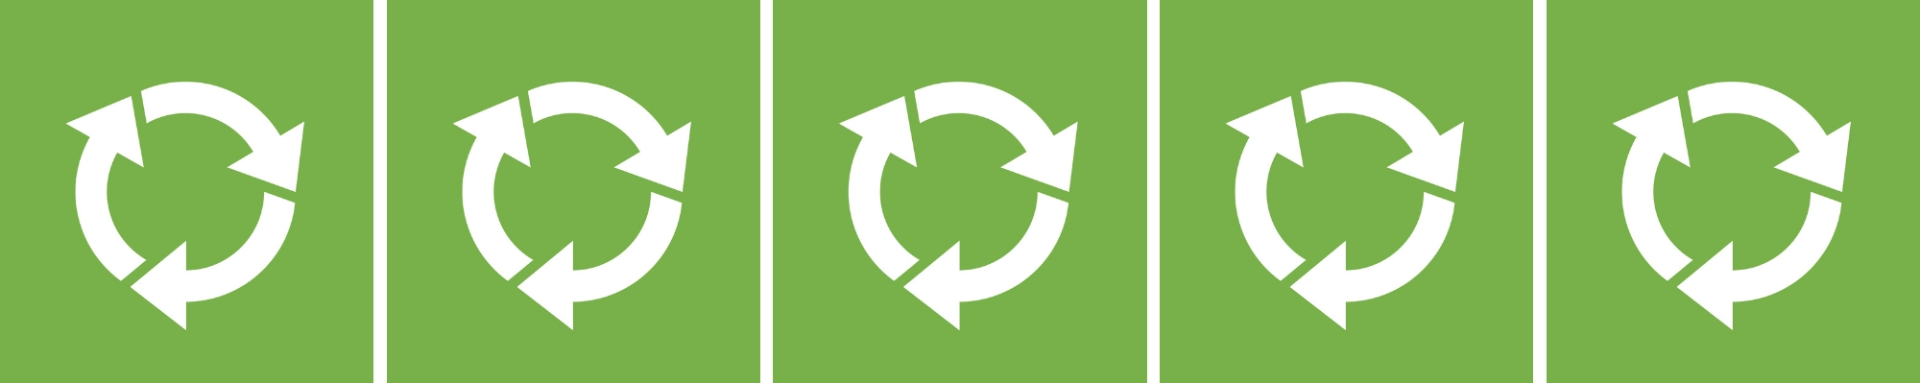 Et grønt banner med fem genbrugspiktogrammer på række